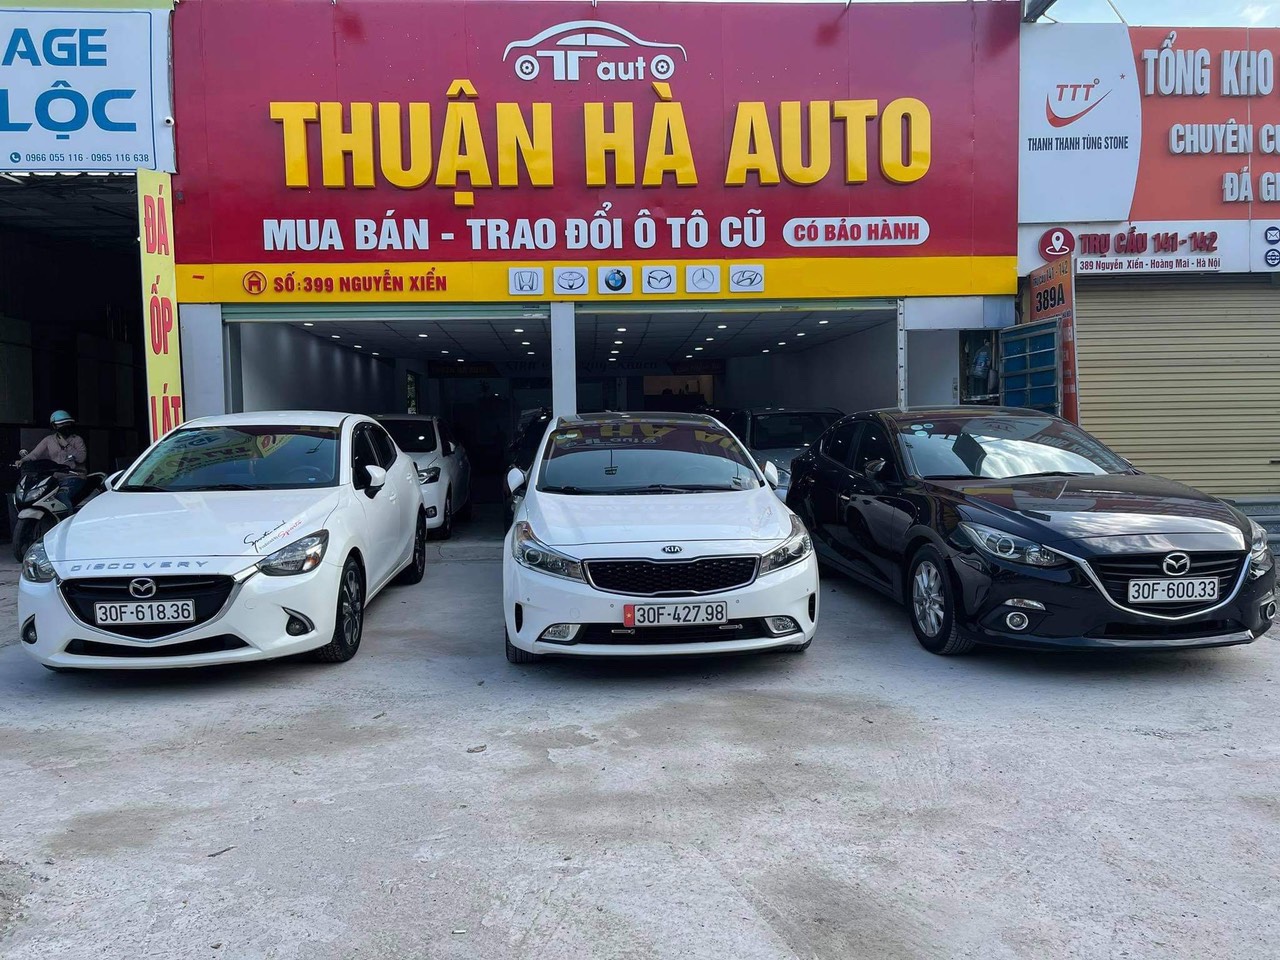 Thuận Hà Auto (1)